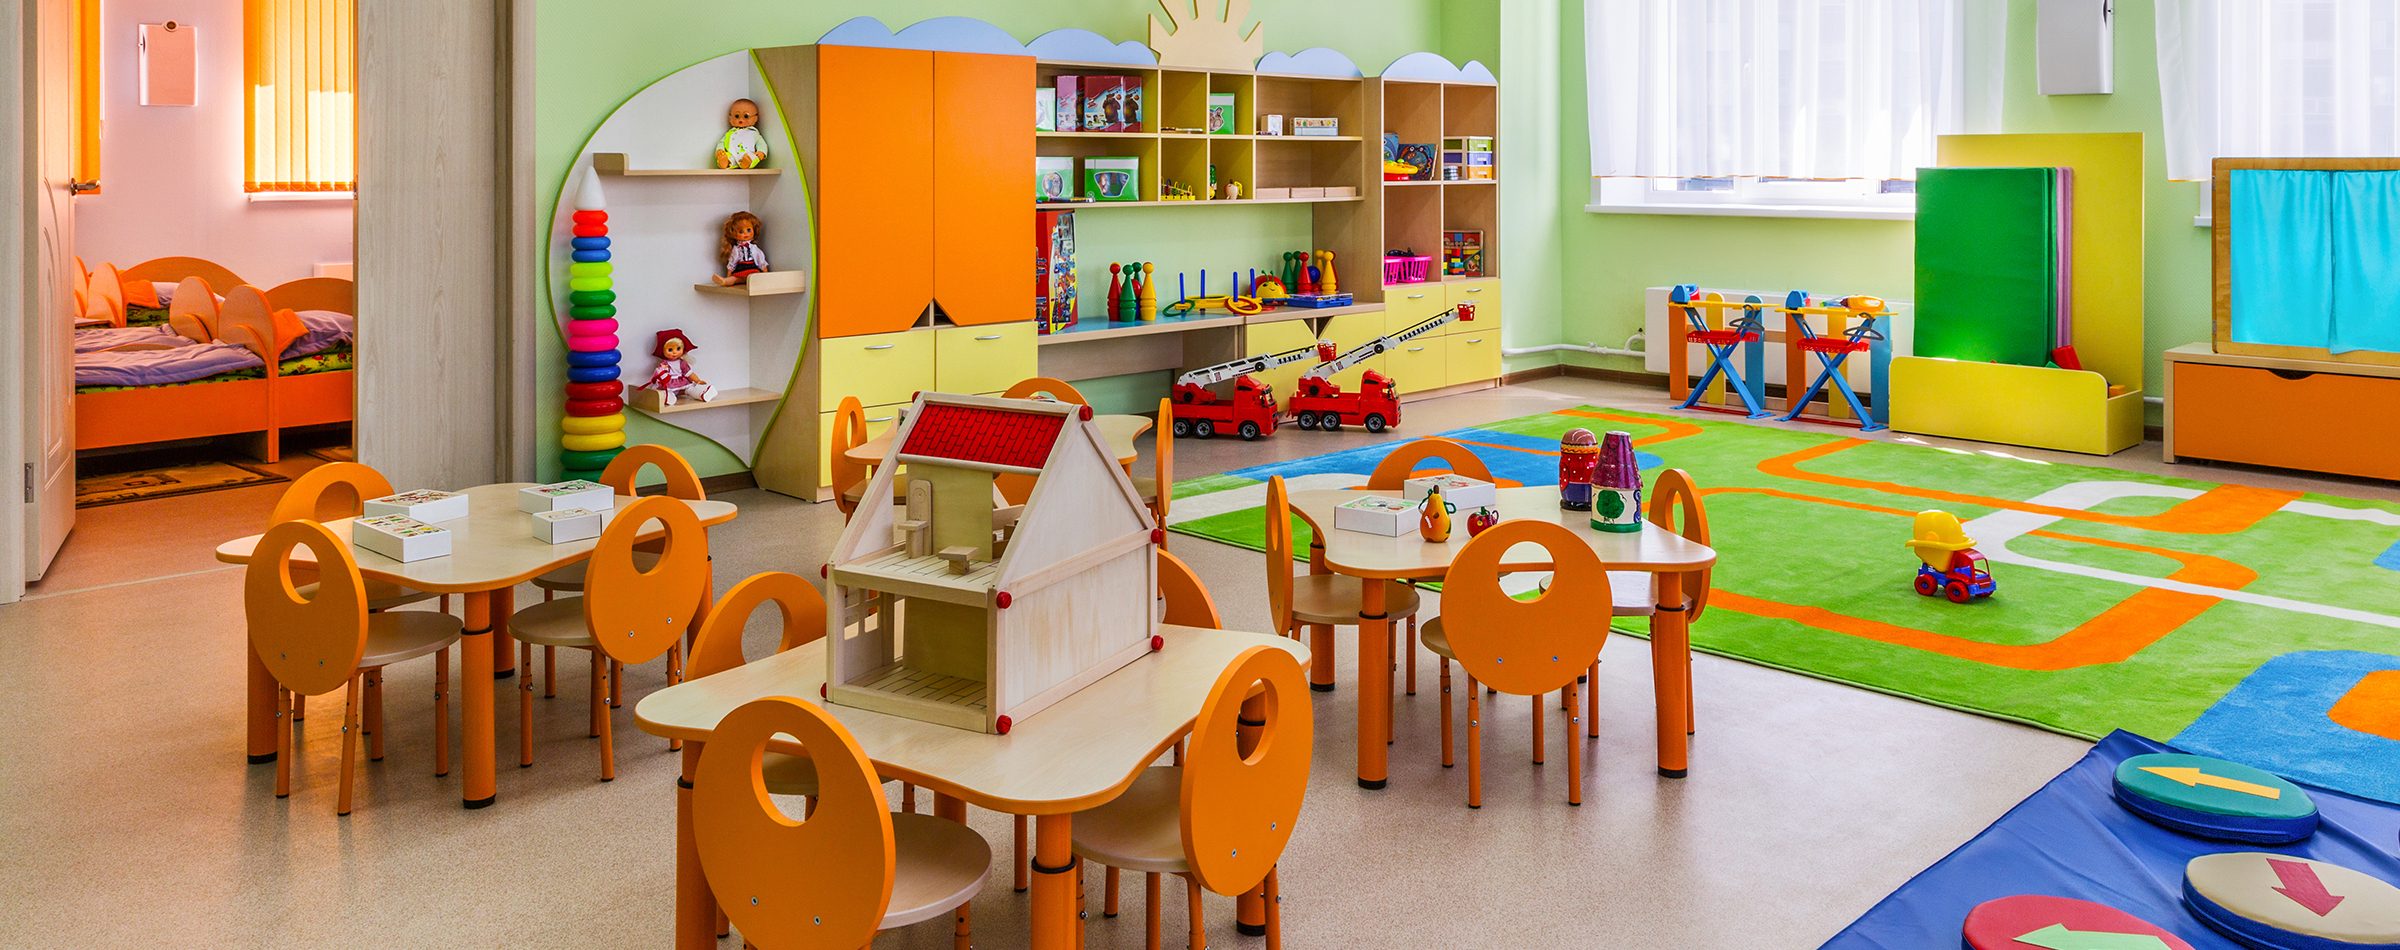 An ideal classroom environment